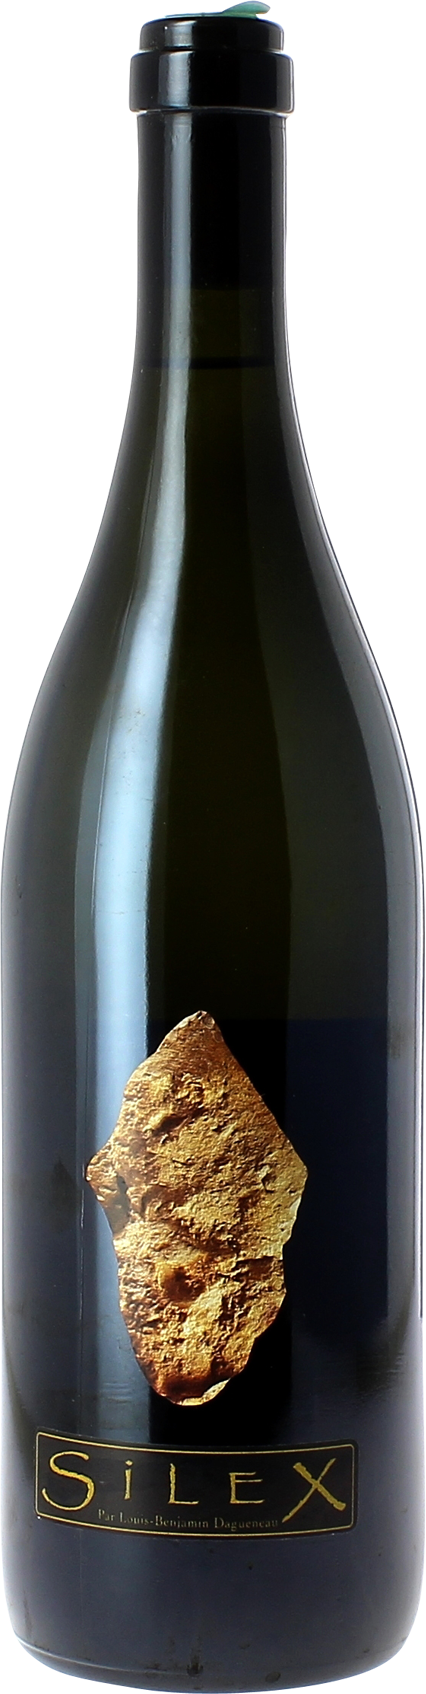 Pouilly fume silex didier dagueneau 2016  Vin de France, Valle de la Loire